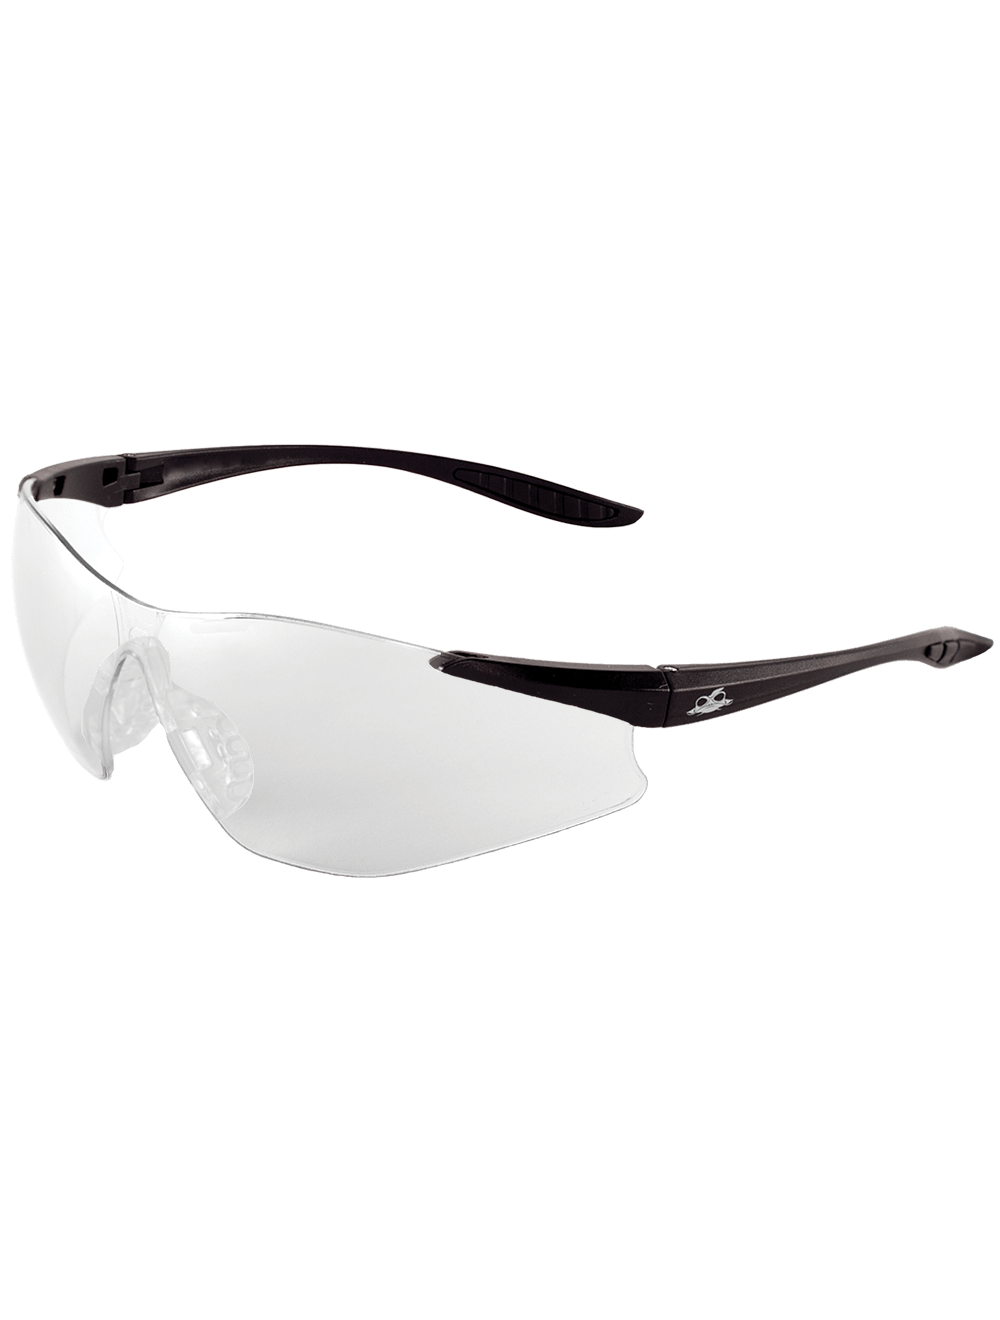 Snipefish® Clear Anti-Fog Lens, Matte Black Frame Safety Glasses - BH761AF